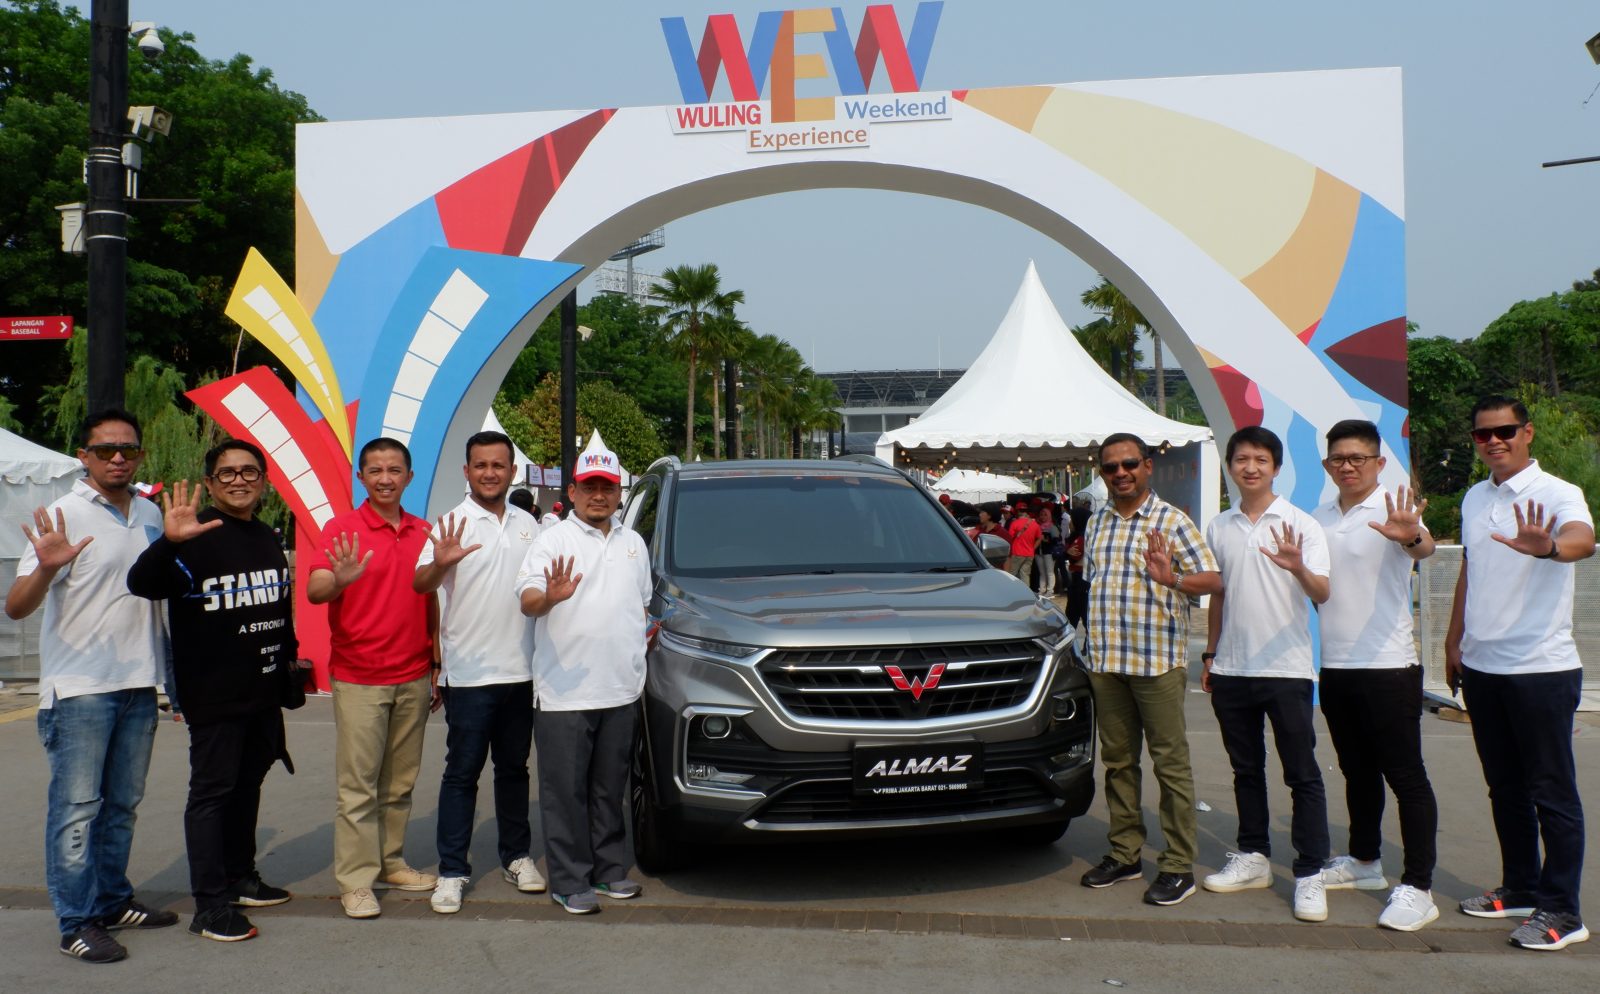 Image Thousands of Visitors Enliven Super WEW Event in Jakarta